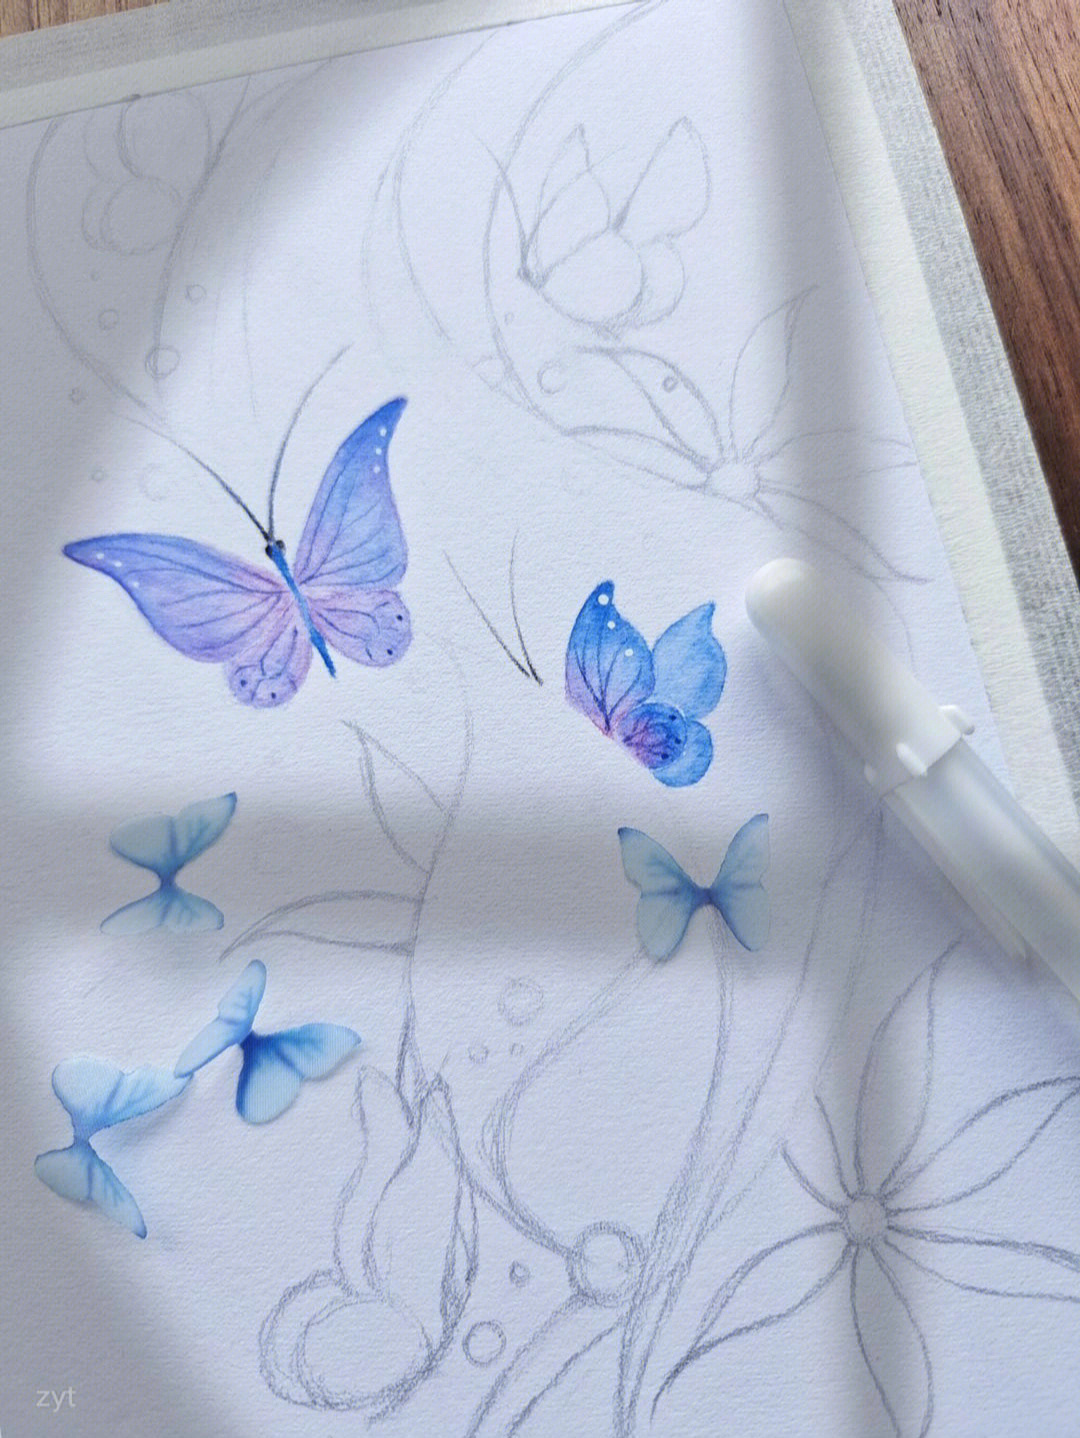 分享一个水溶性彩铅画蝴蝶的方法